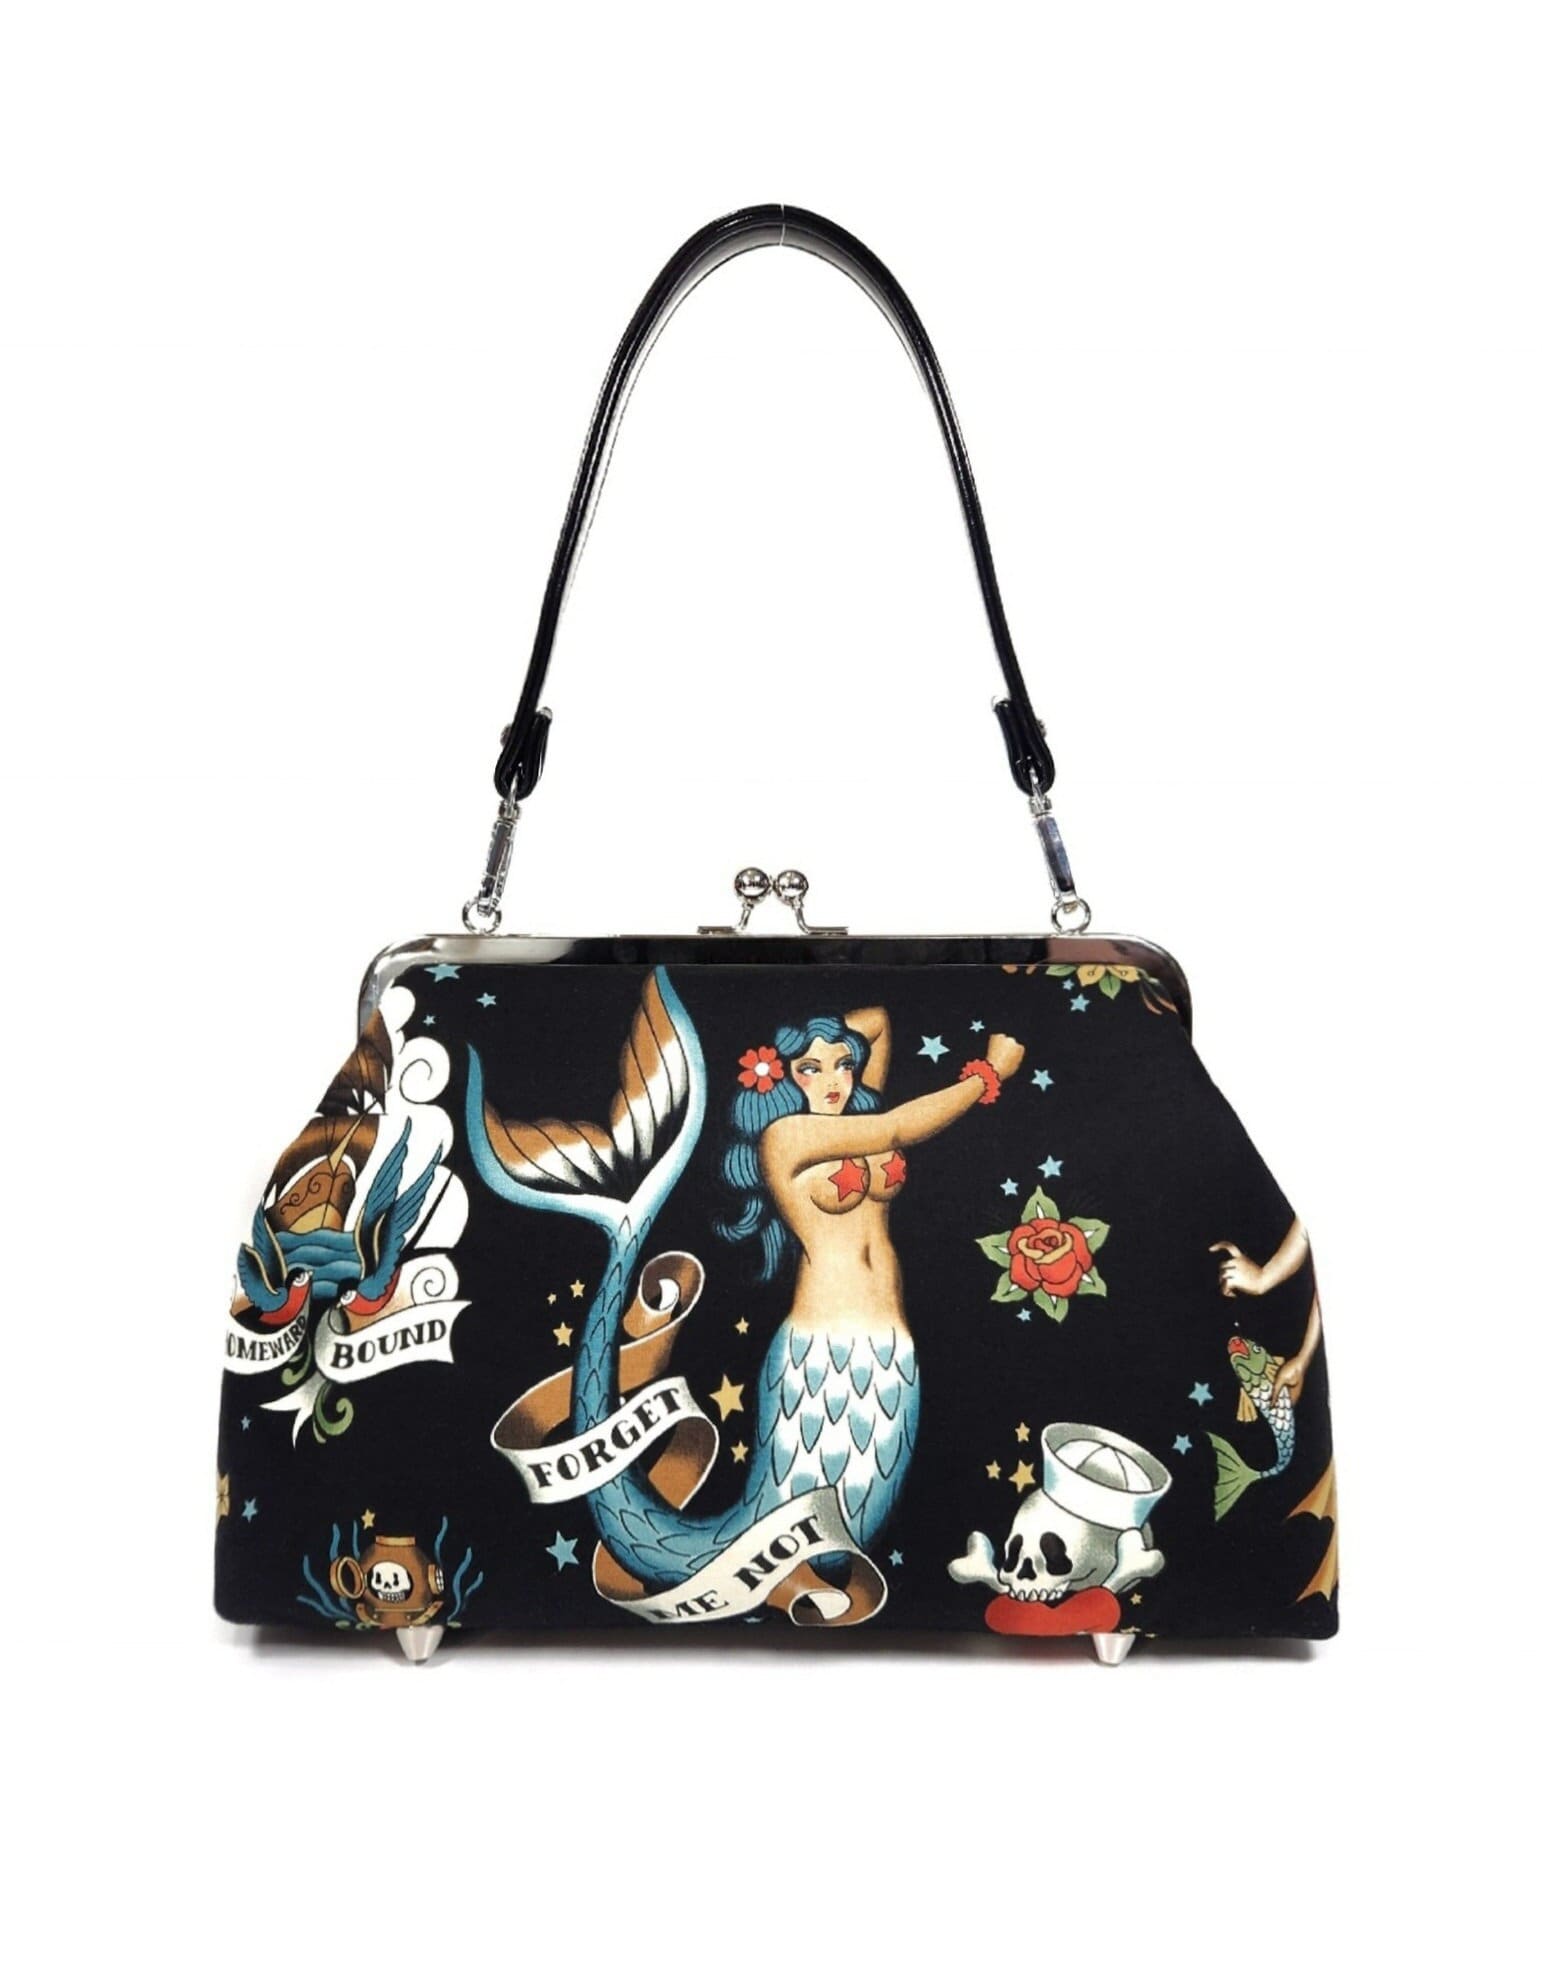 Sold at Auction: Lux De Ville & SourPuss Woman's Handbags